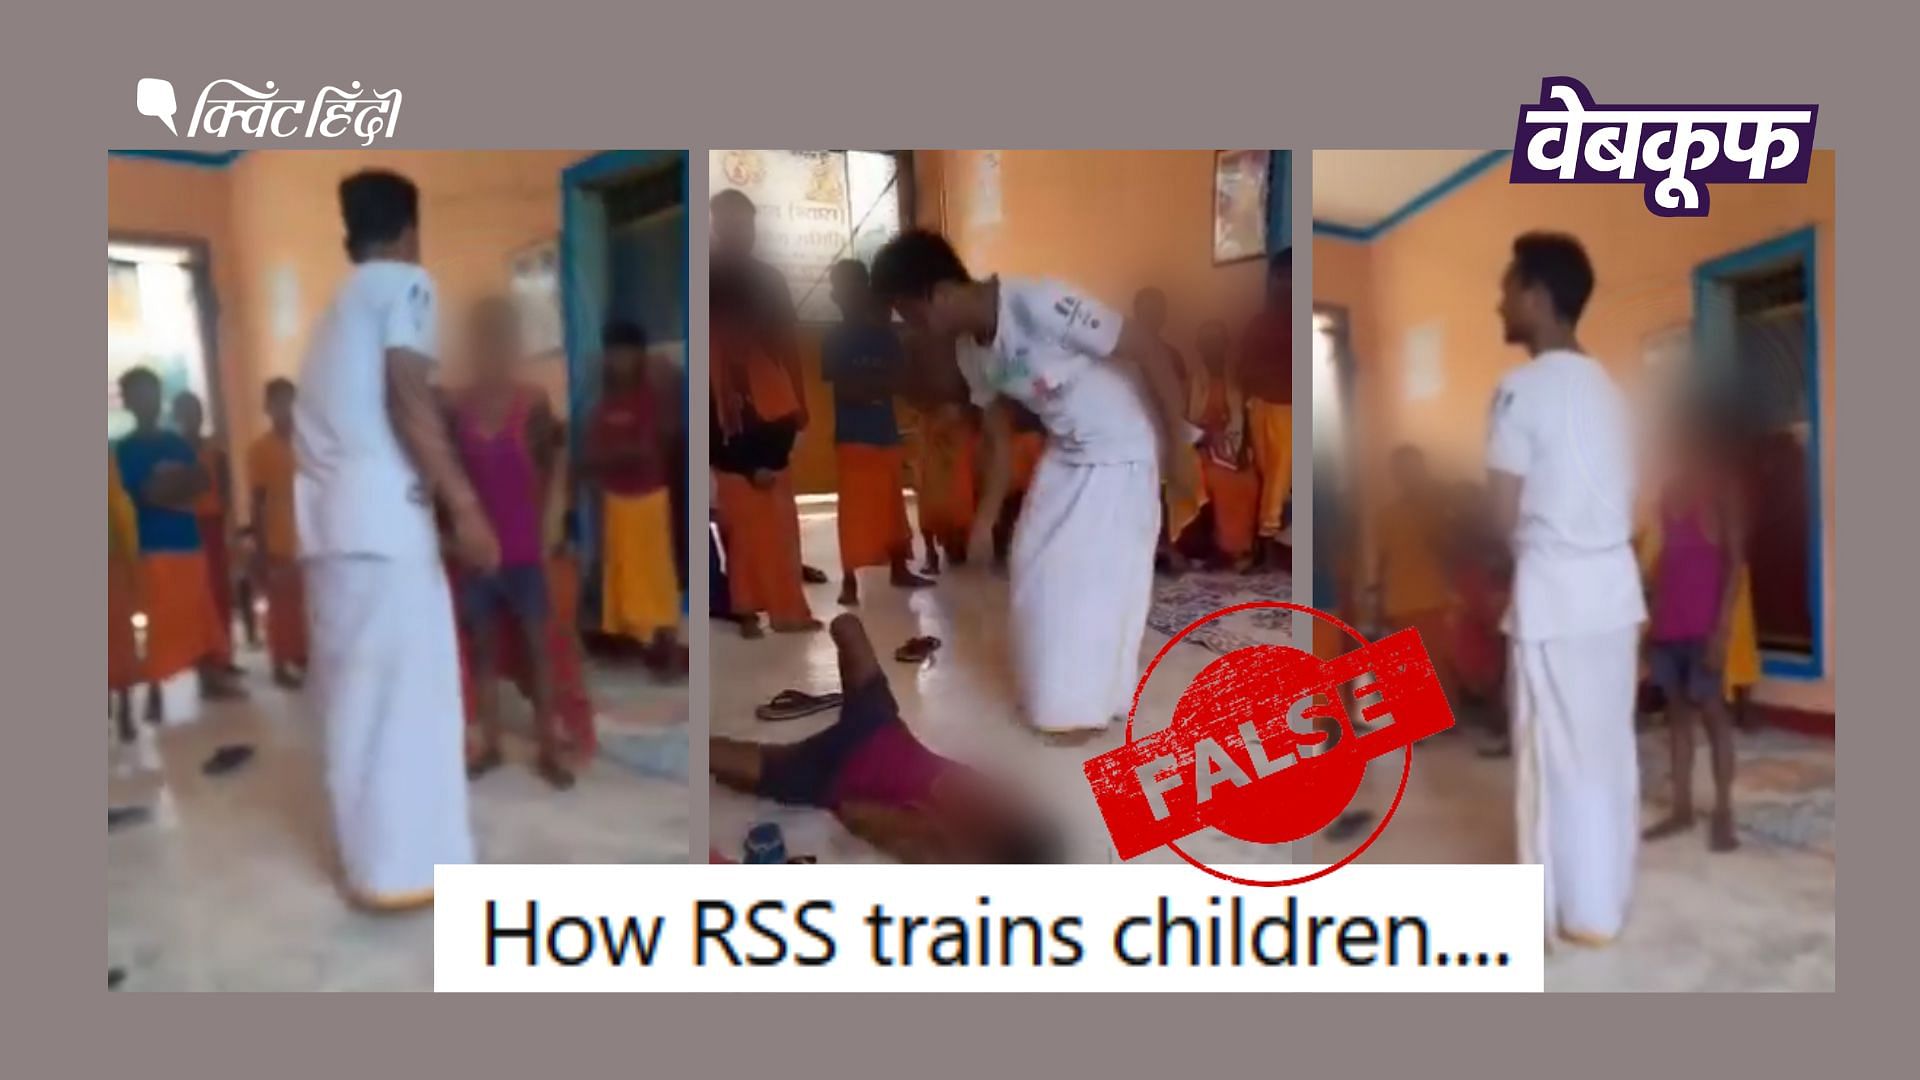 <div class="paragraphs"><p>सीतापुर का वीडियो RSS का बताकर गलत दावे से वायरल</p></div>